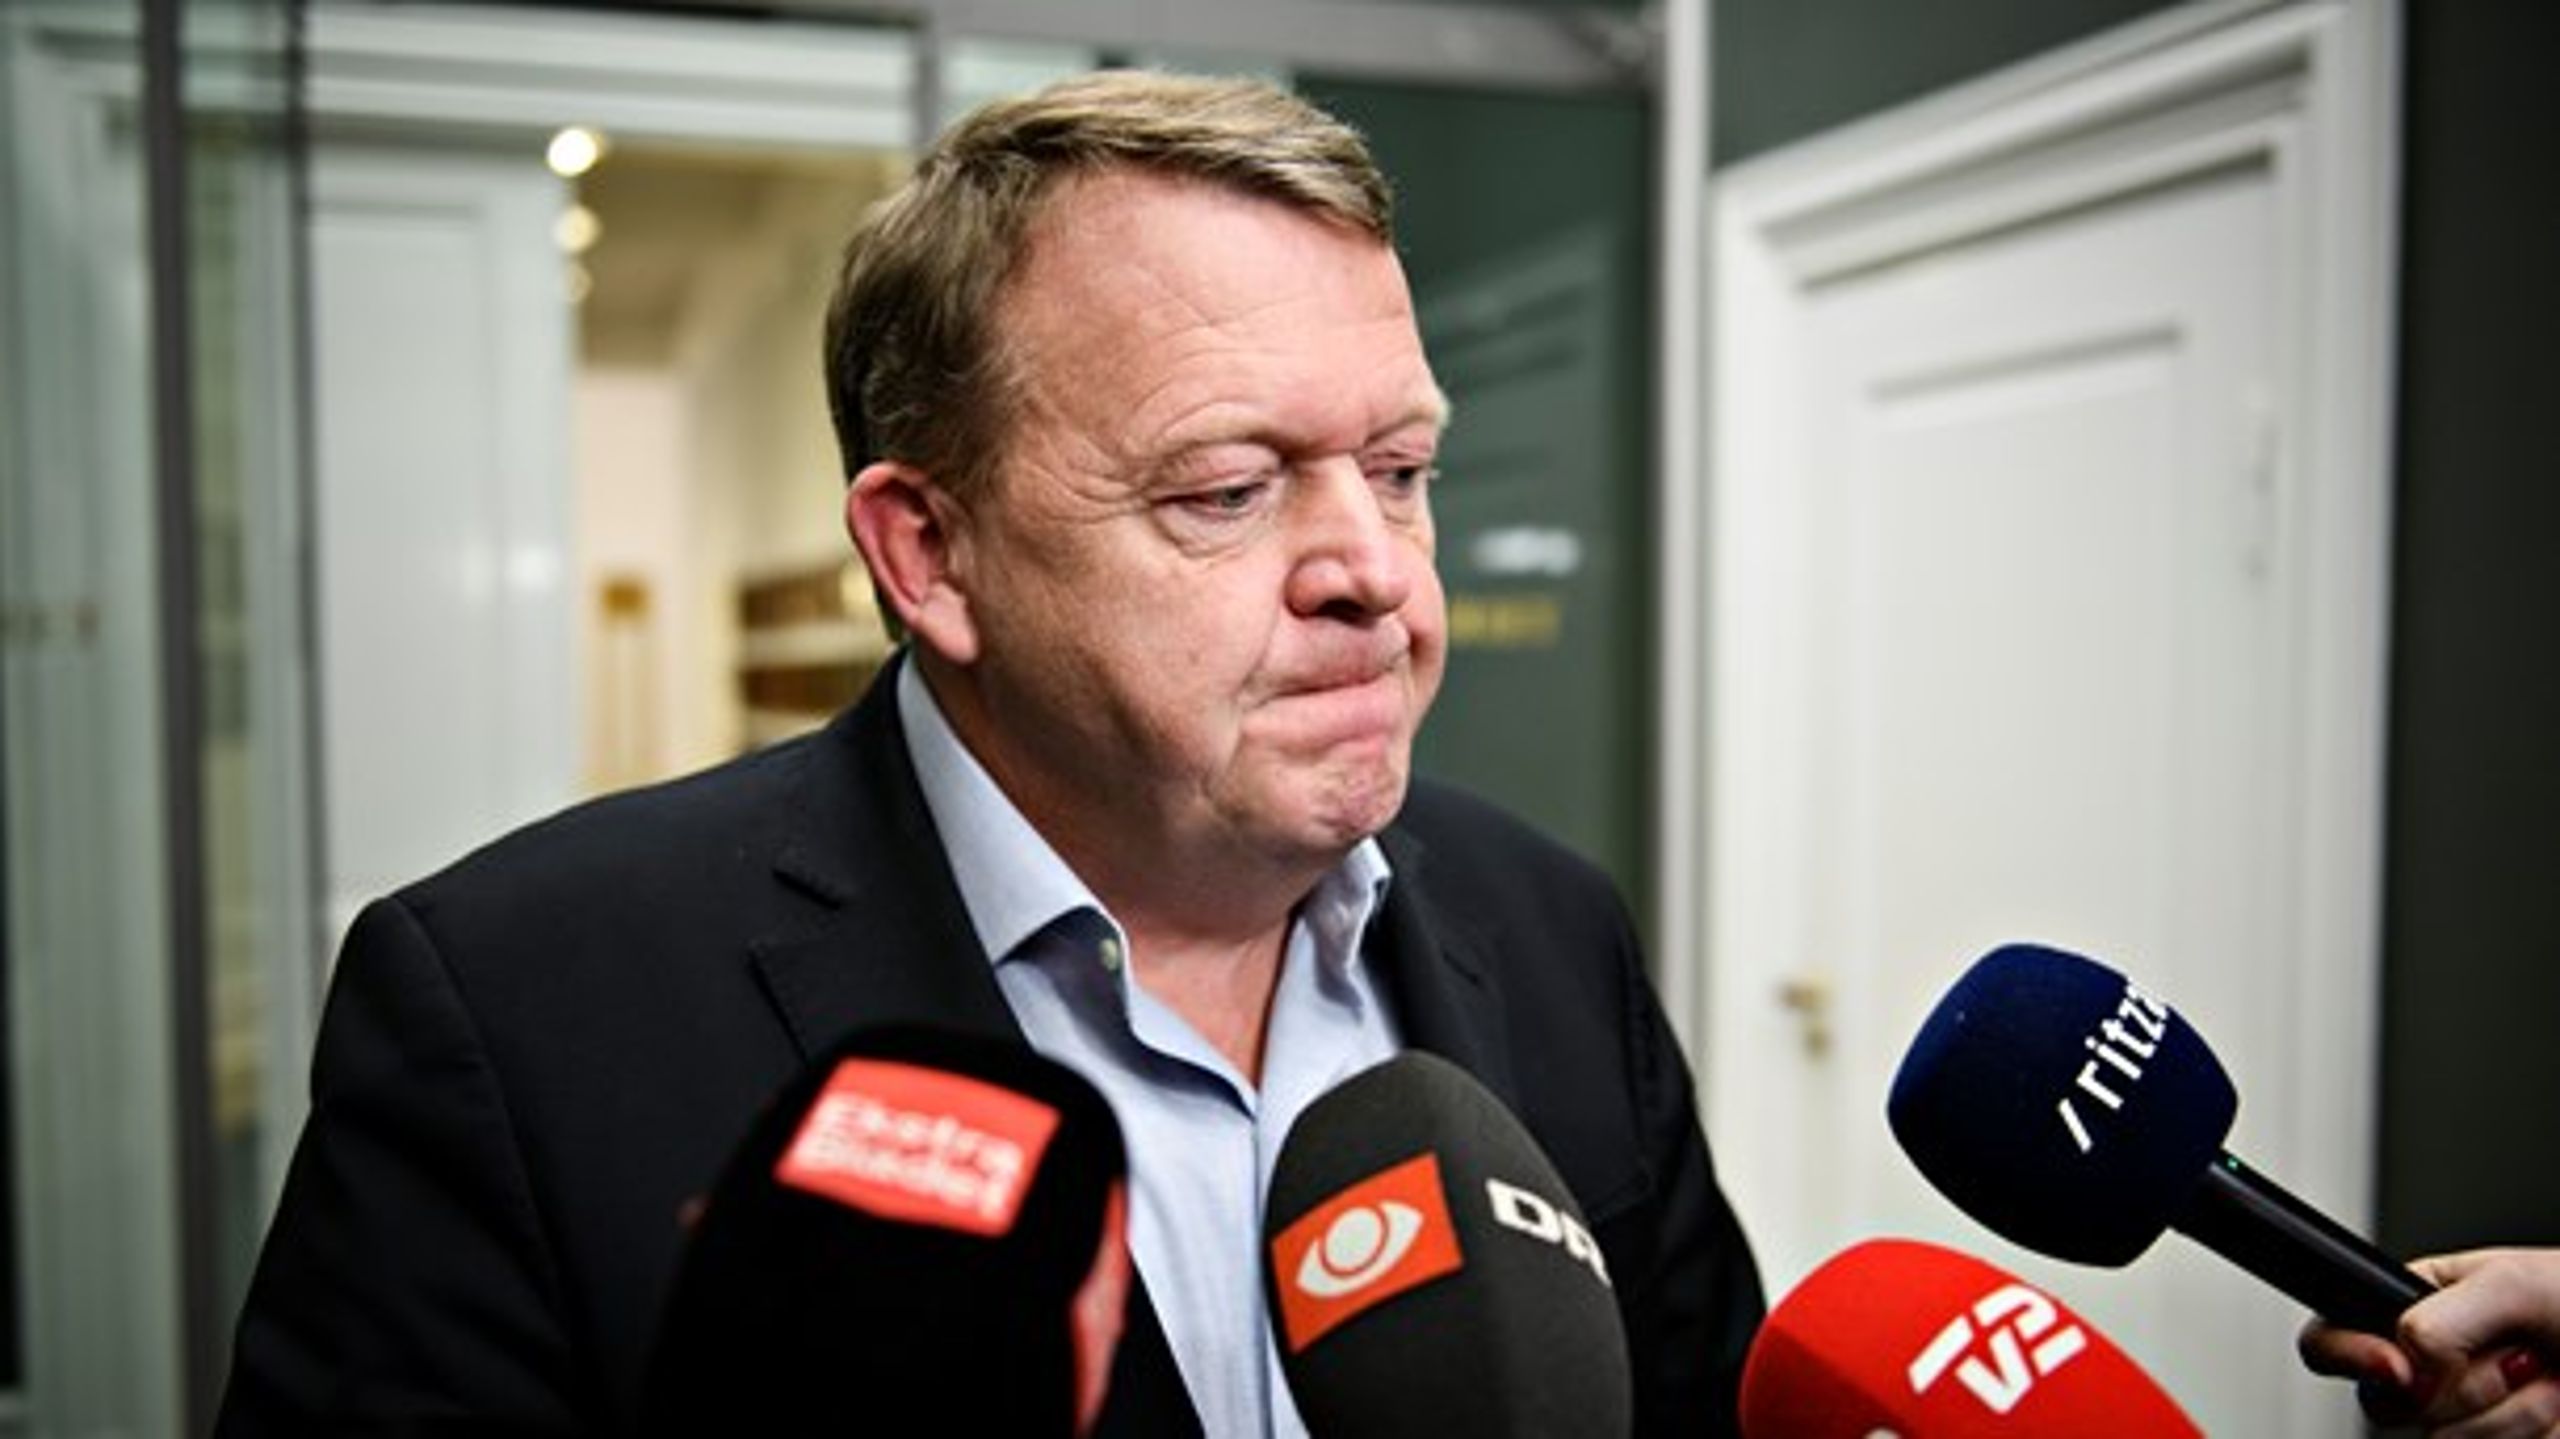 "Nu er Løkke slået tilbage til&nbsp;start," siger Altingets politiske kommentator, Erik Holstein, om statministerens udmelding.